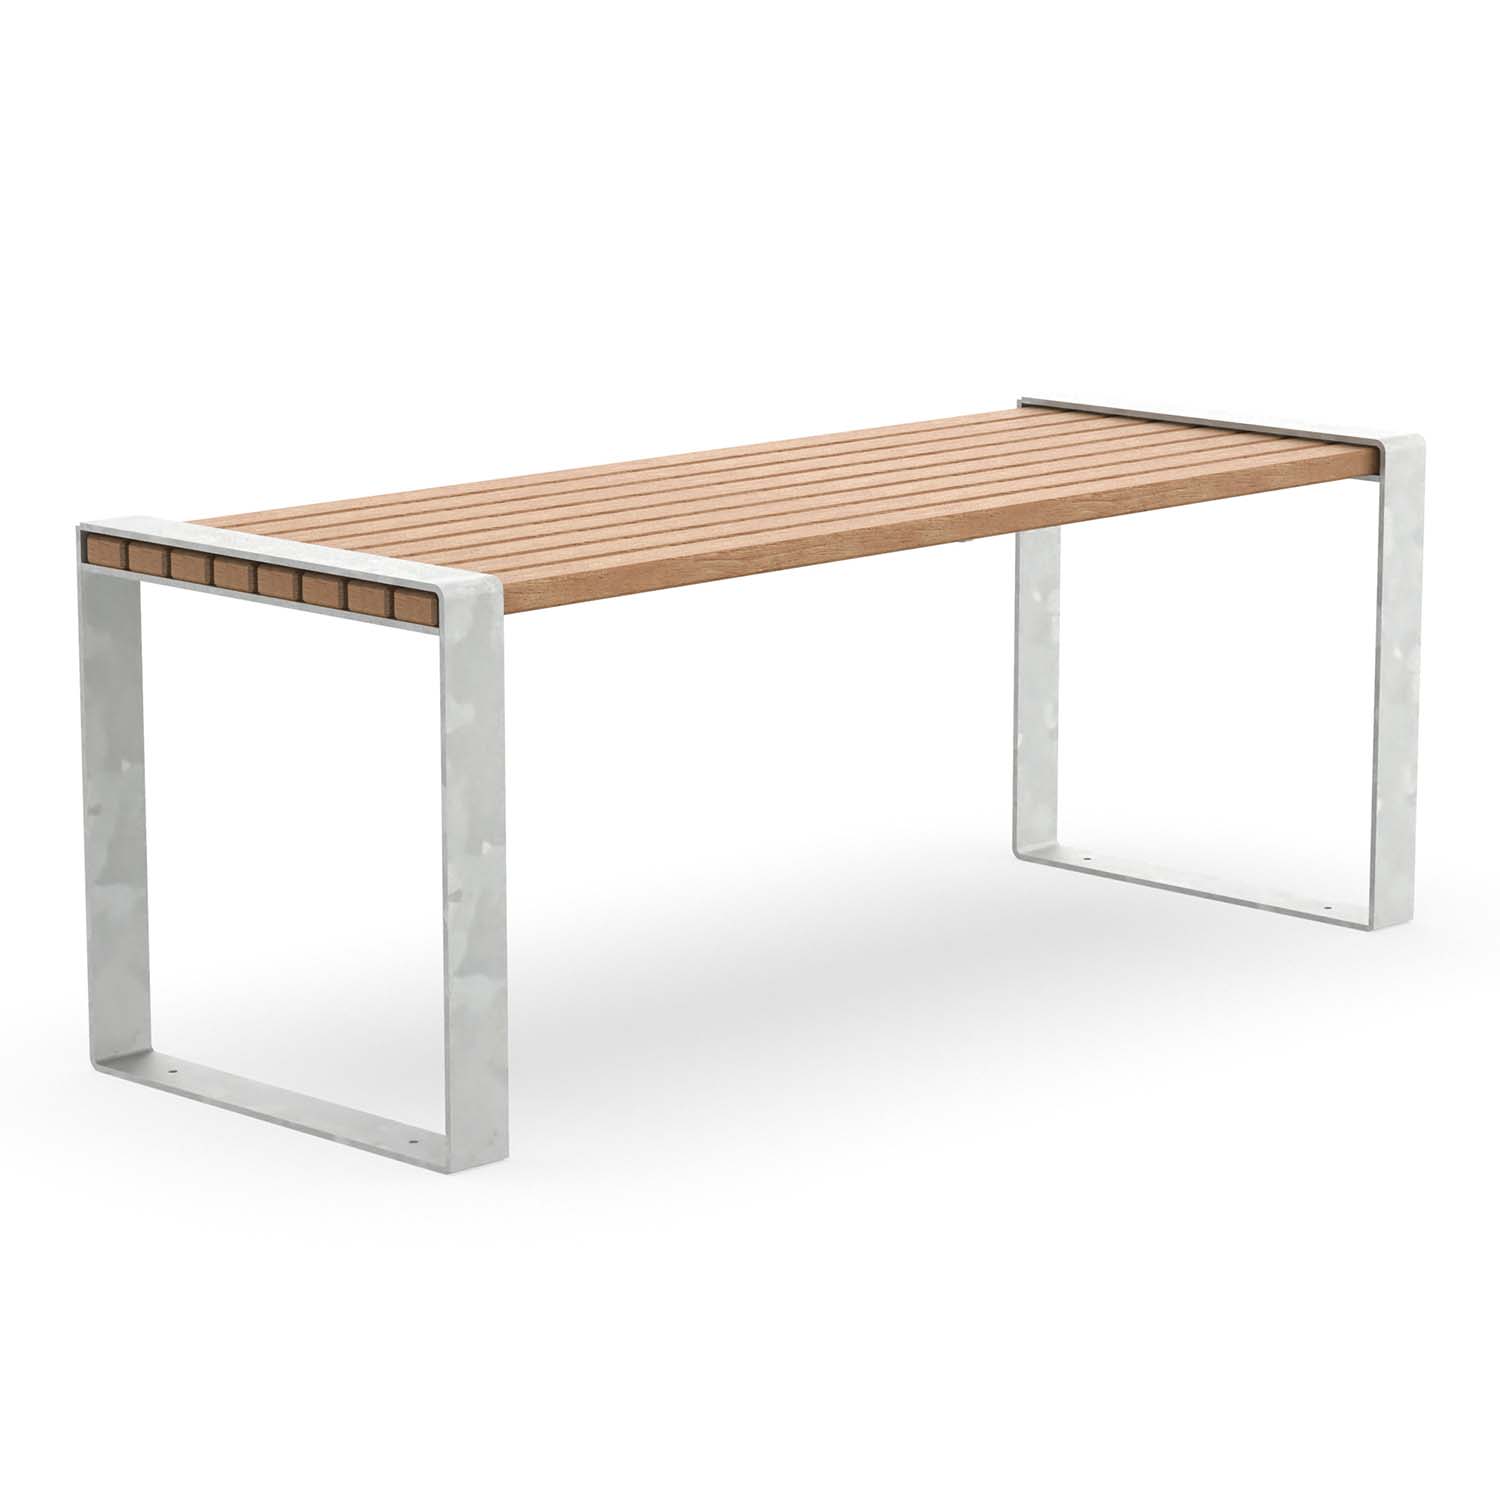 Tisch für Parkbank CONSOLA, Flachstahl, Tischfläche aus Holz, verzinkt